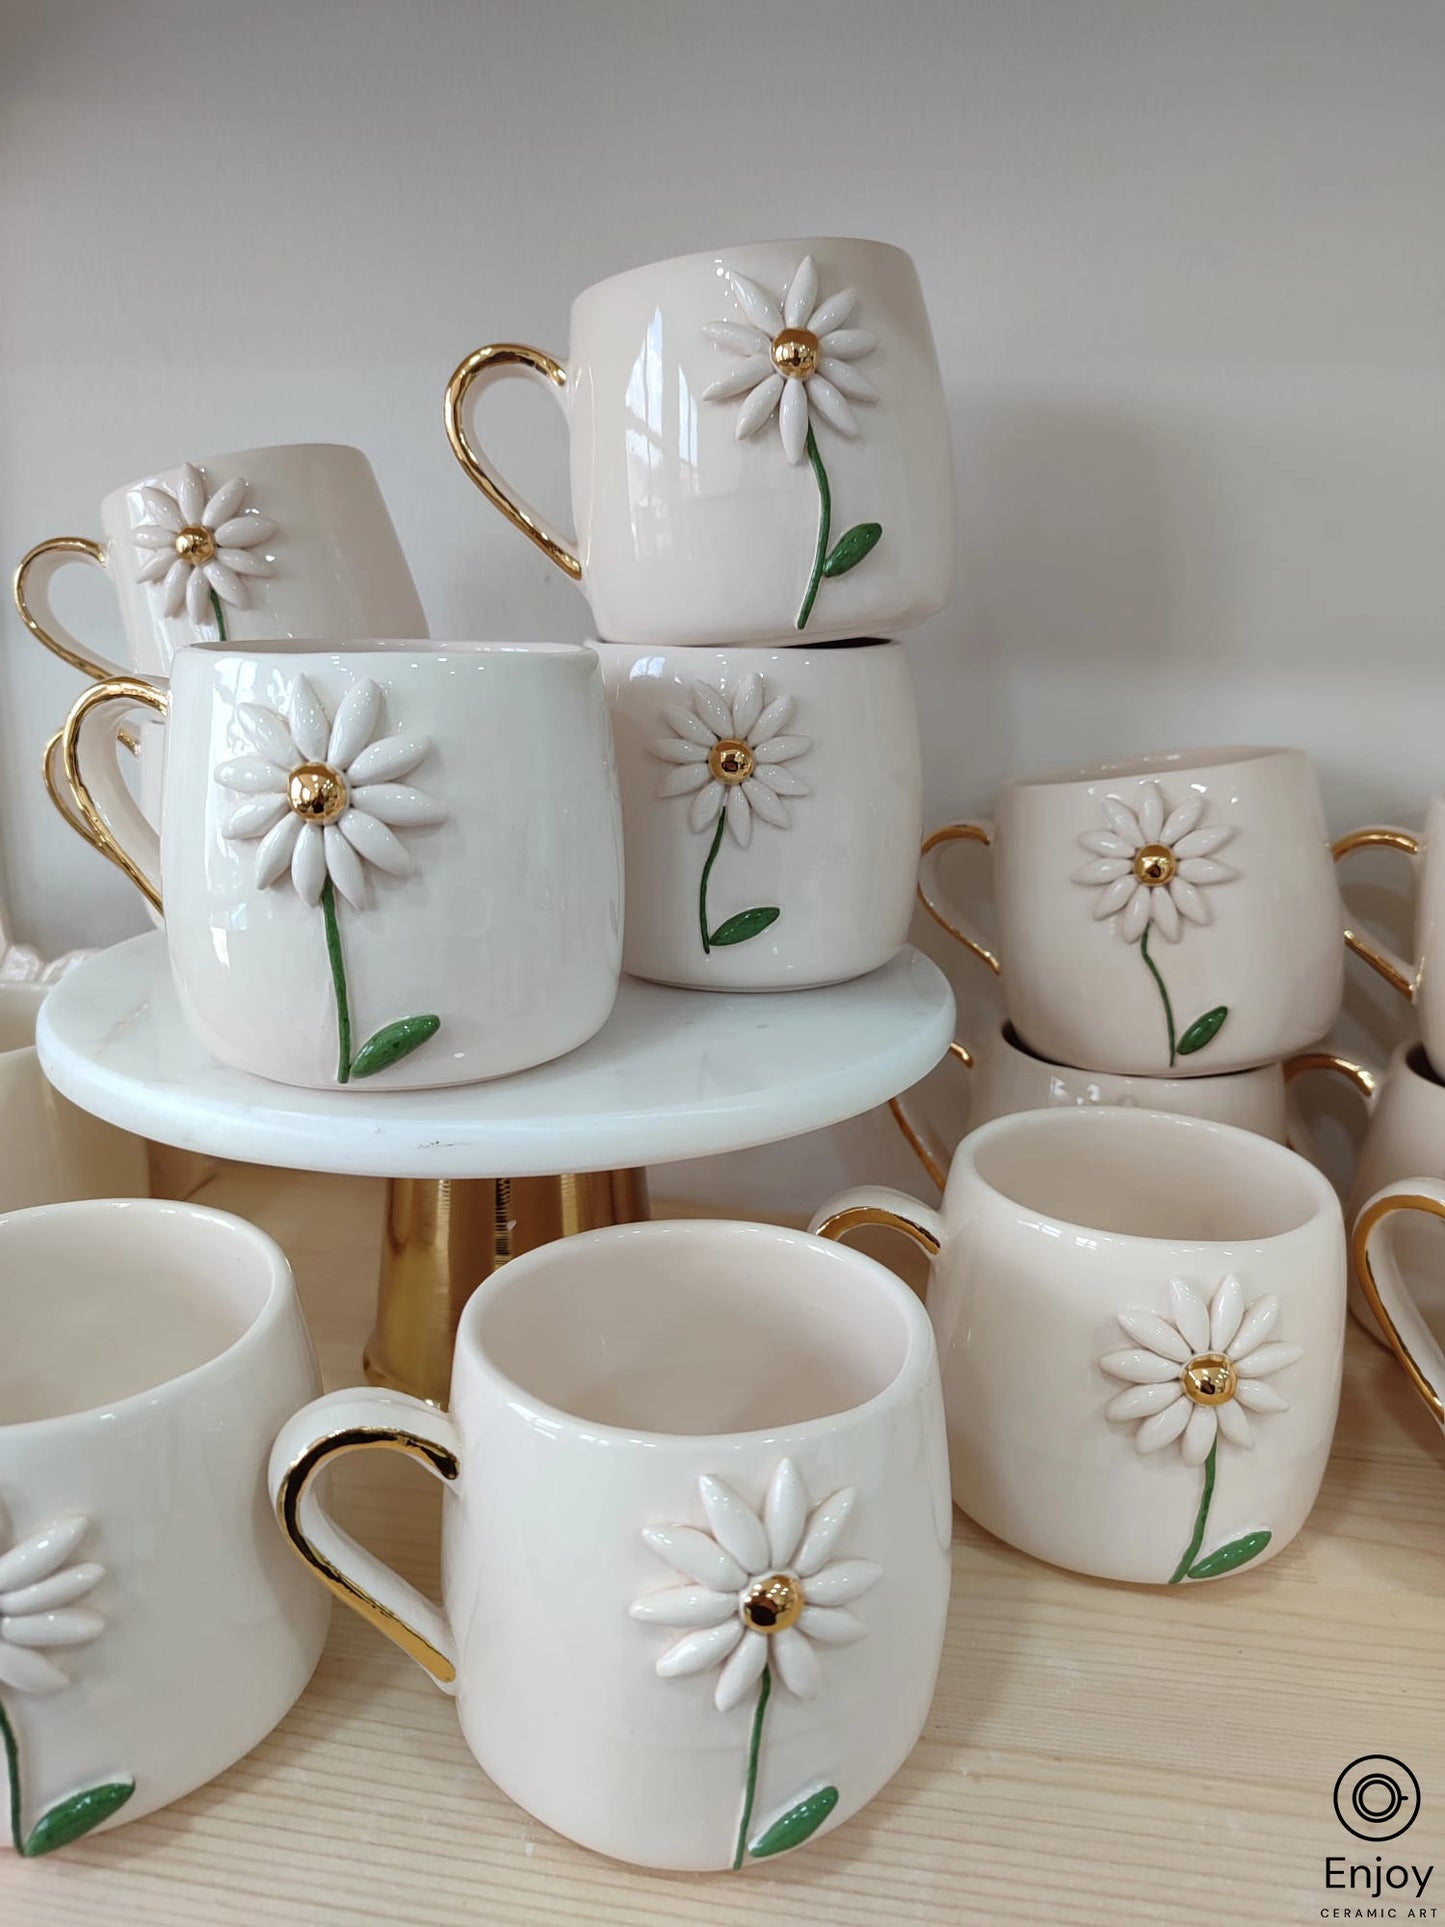 Handmade Daisy Mug With Gold Handle 10 oz, Daisy Gifts, Daisy Flower Cup, Daisy Flower Coffee Mug, Daisy Coffee Cup, Daisy Gifts Women